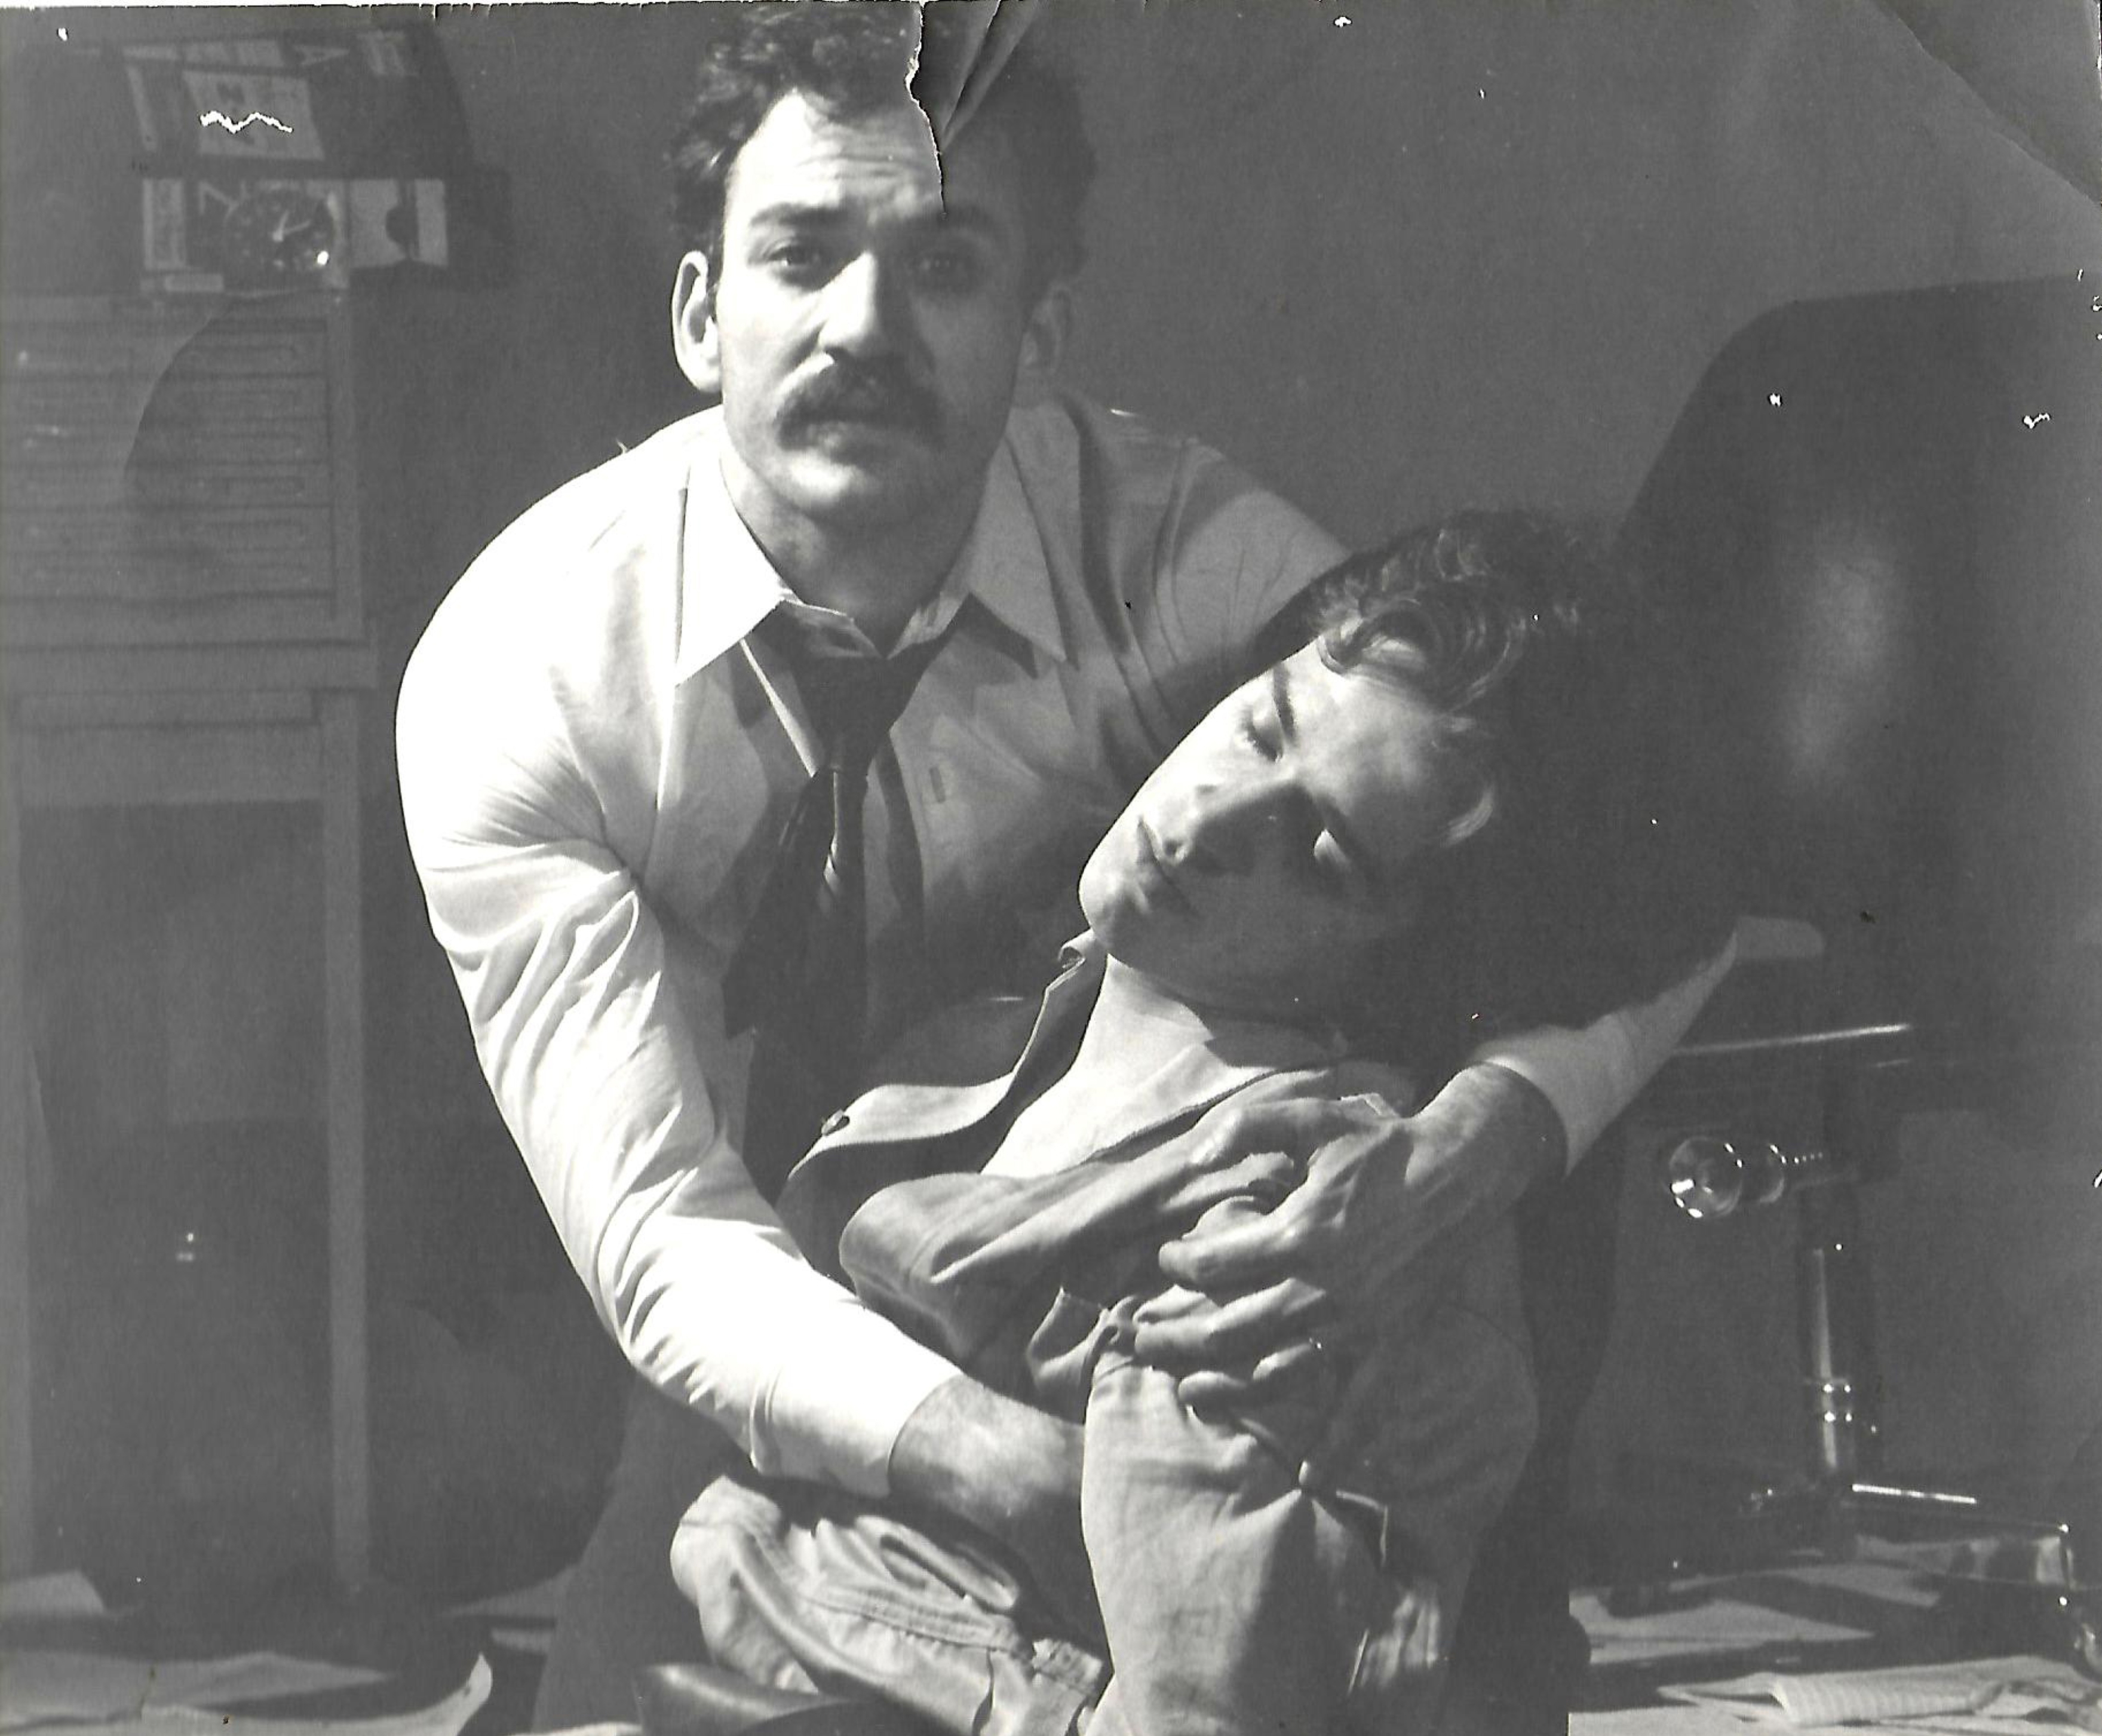 Agustín Núñez y Carlos Gutiérrez en ‘Dos perdidos en una extraña noche’ (versión libre de Agustín Núñez de la obra de José Vicente ‘El asalto’), Bogotá, Colombia.